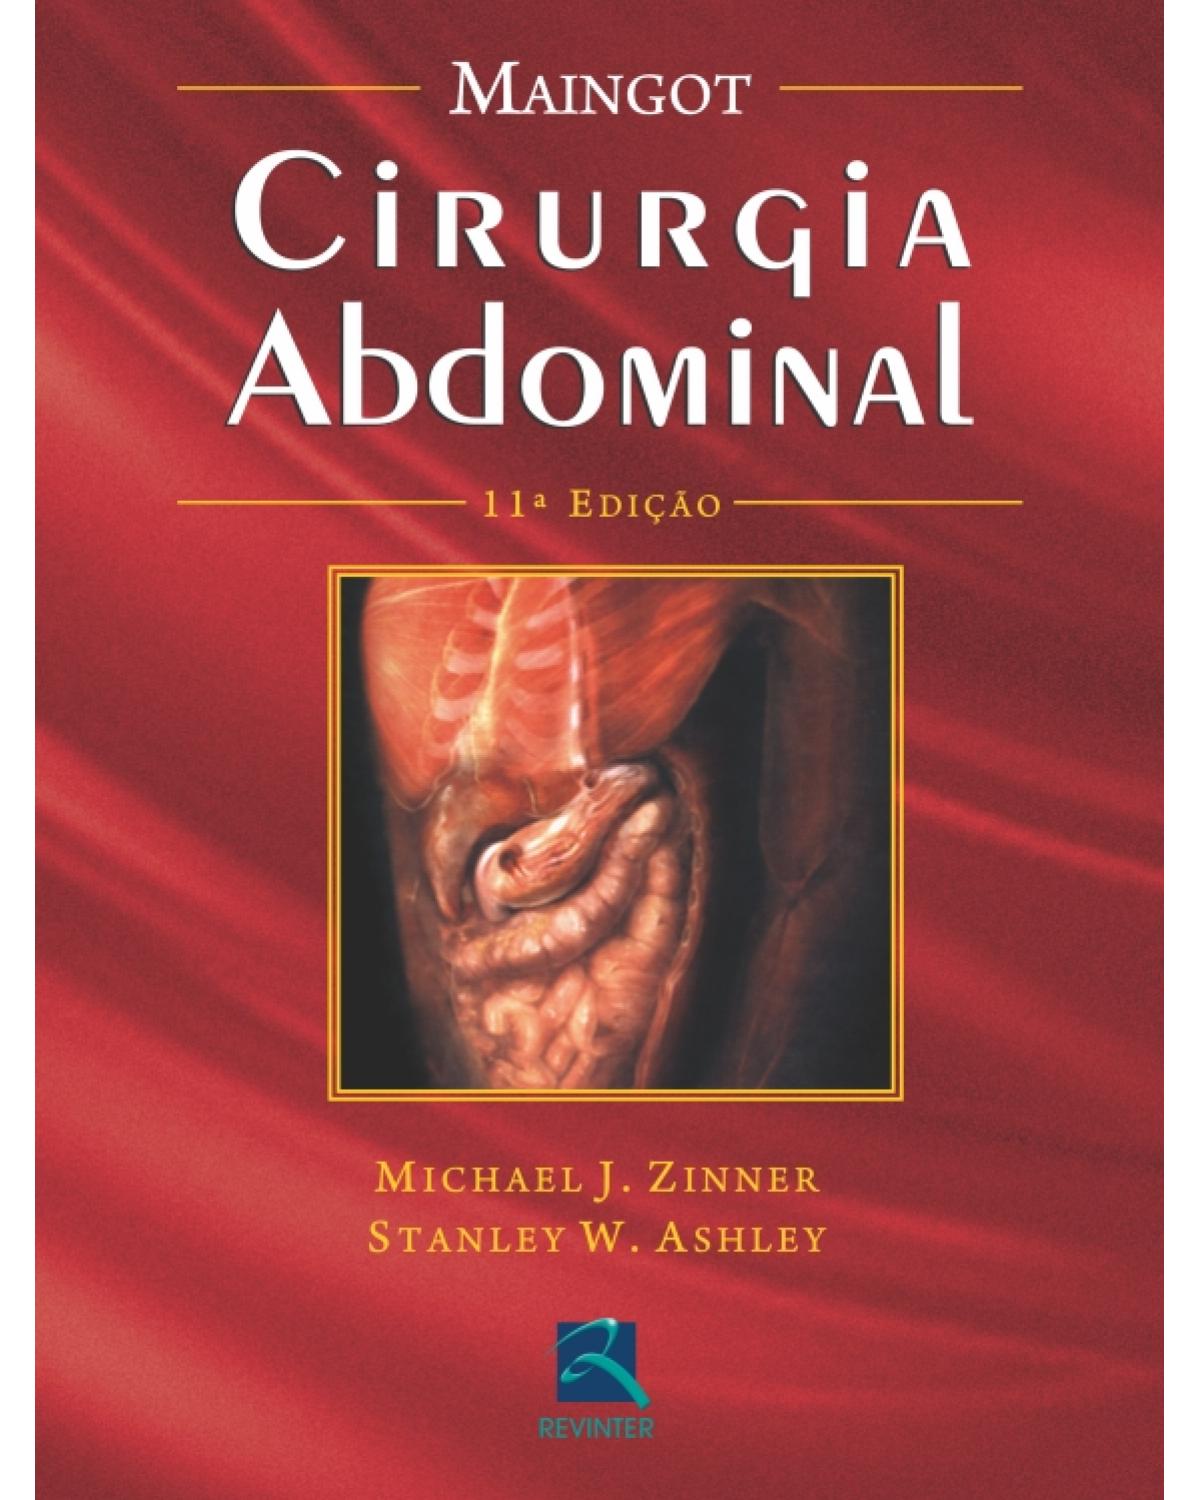 Maingot - Cirurgia abdominal - 11ª Edição | 2011